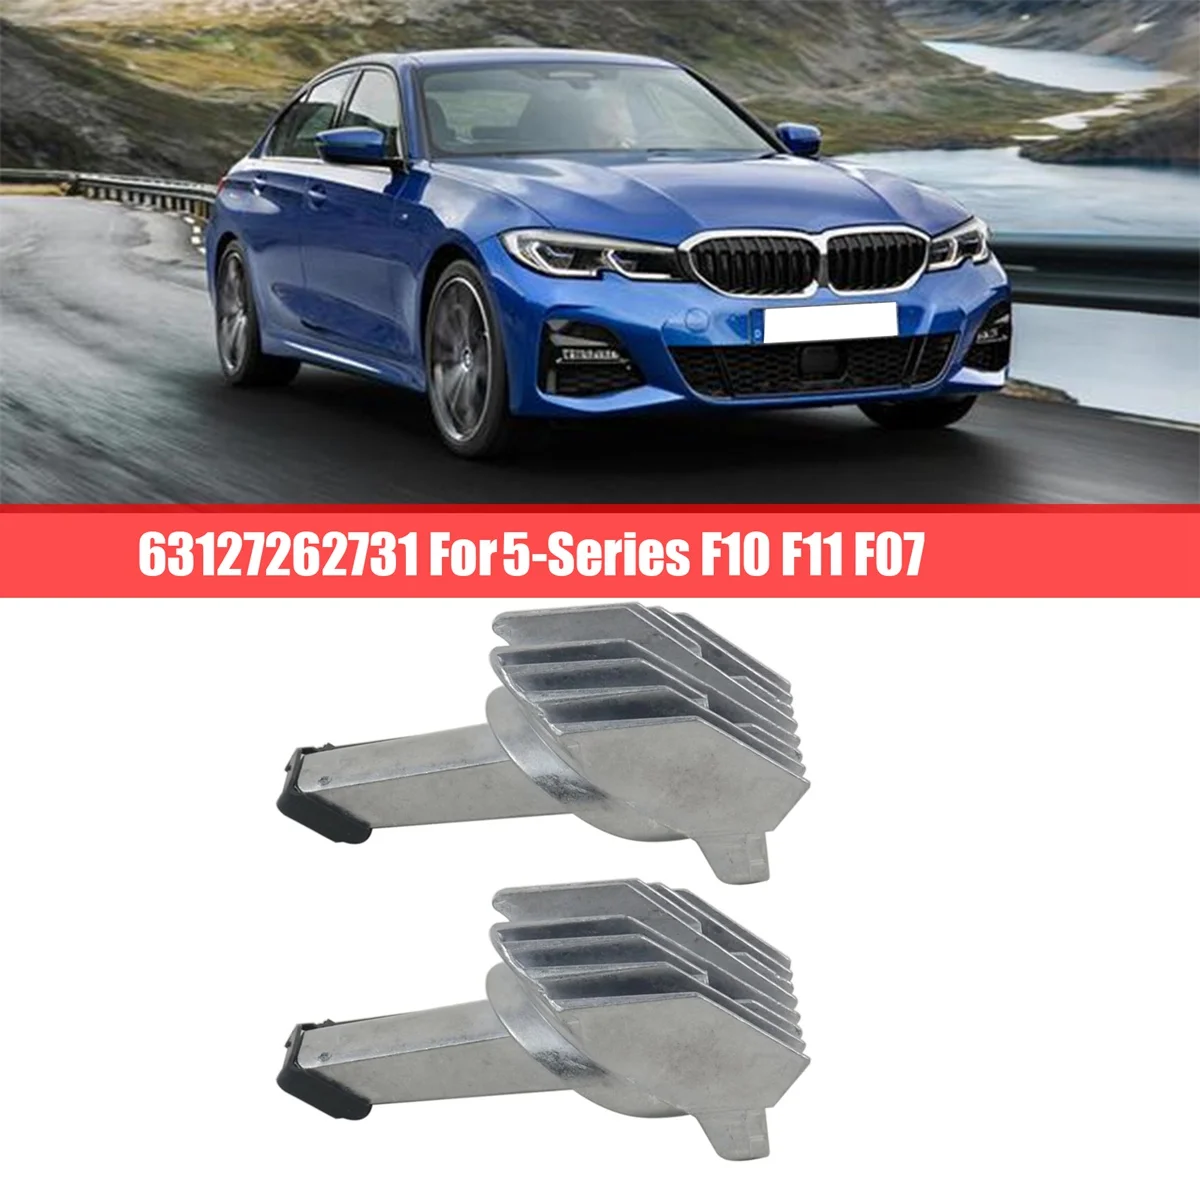 63127262731 Дневной ходовой свет, Модуль источника Angel Vision, Модуль фар, авто для BMW 5-серии F10 F11 F07